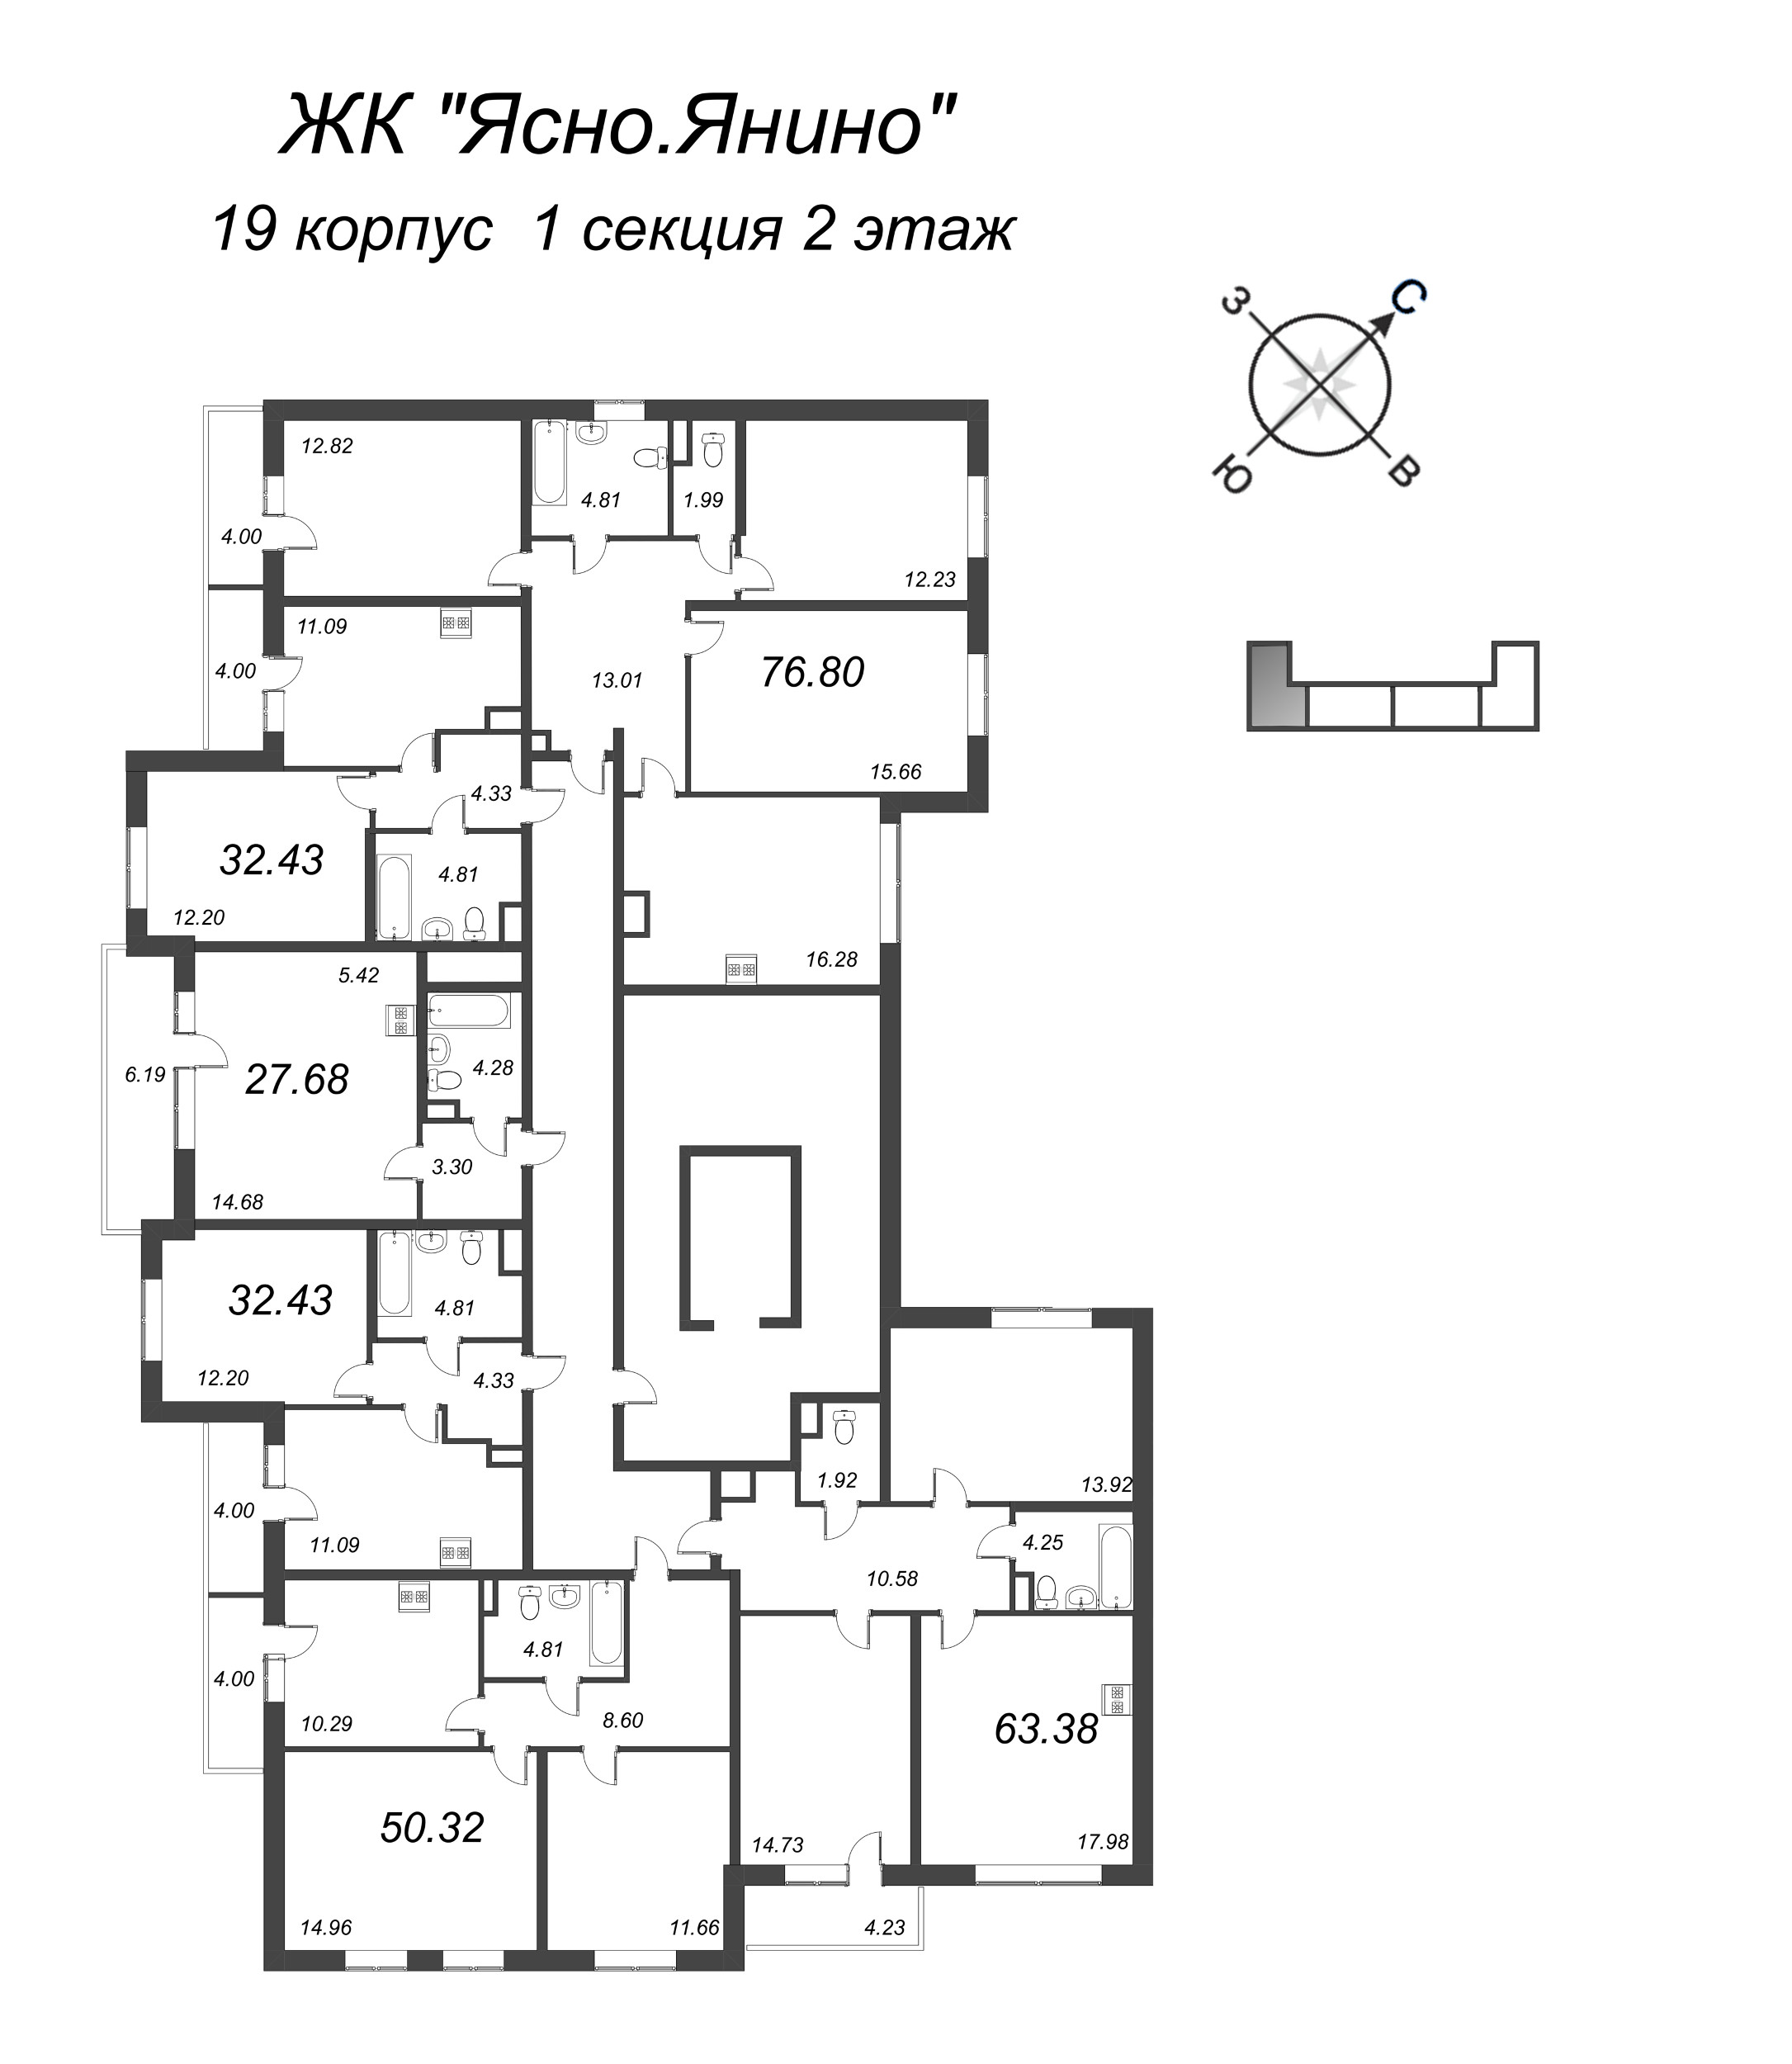 Квартира-студия, 27.68 м² в ЖК "Ясно.Янино" - планировка этажа